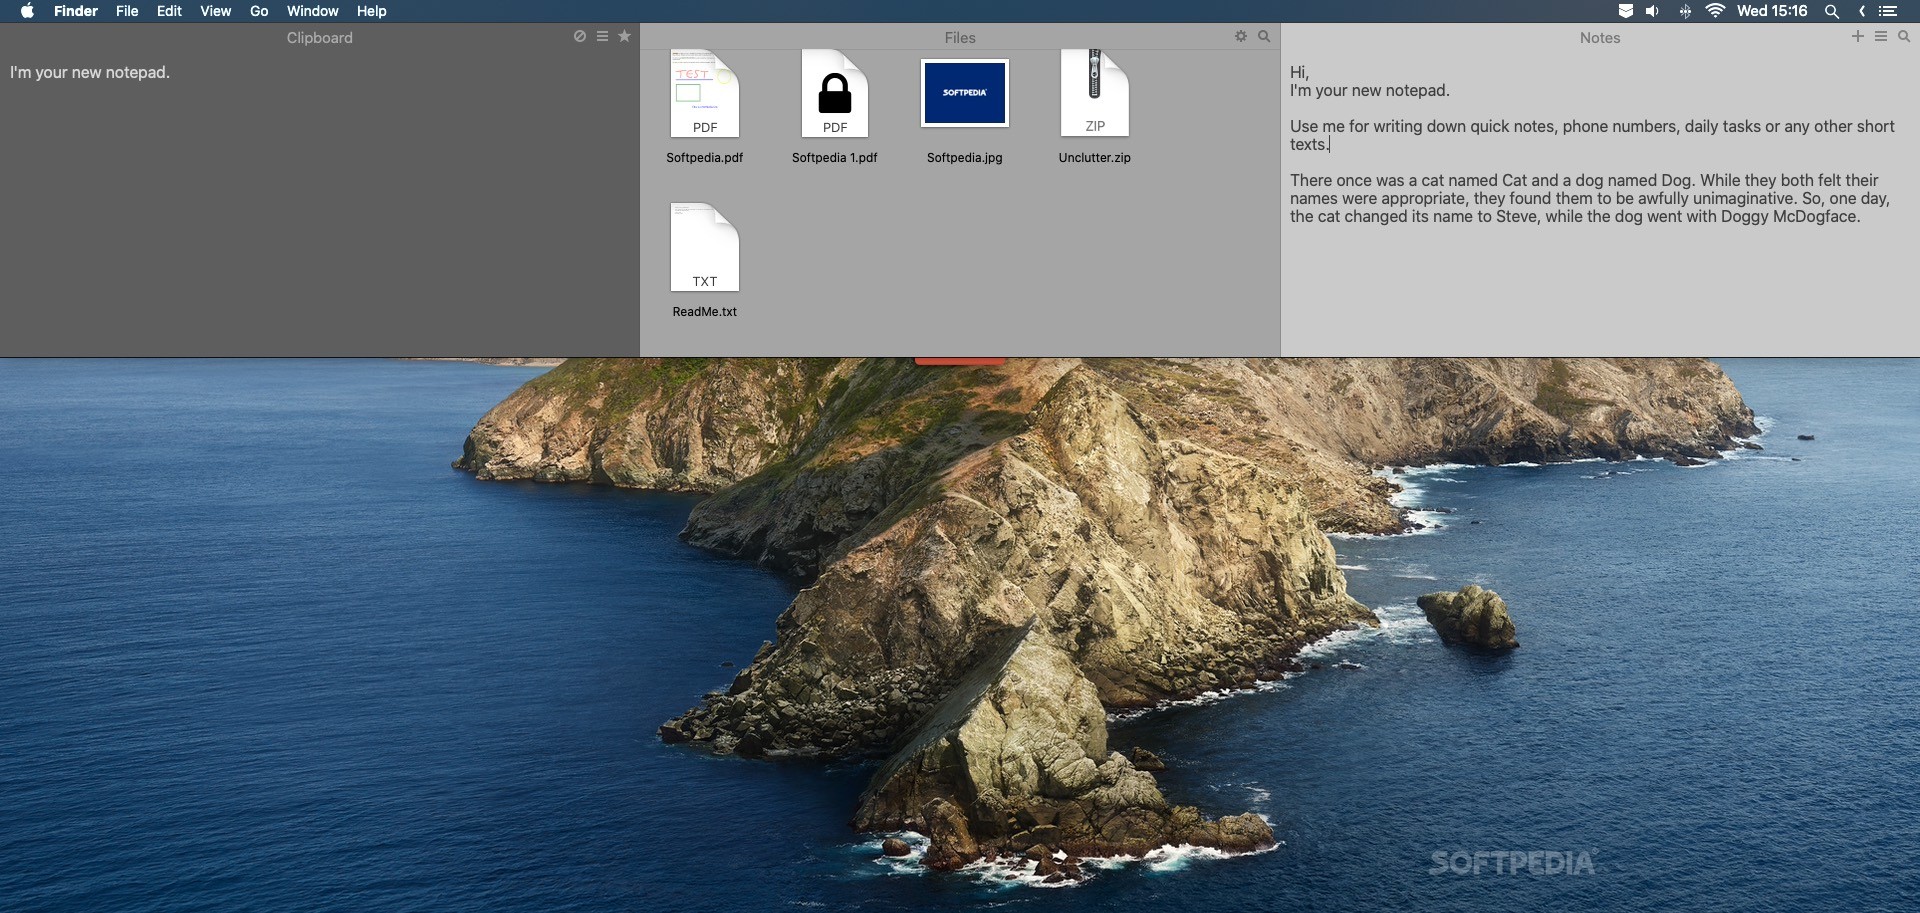 Mac Os X File Manager Free